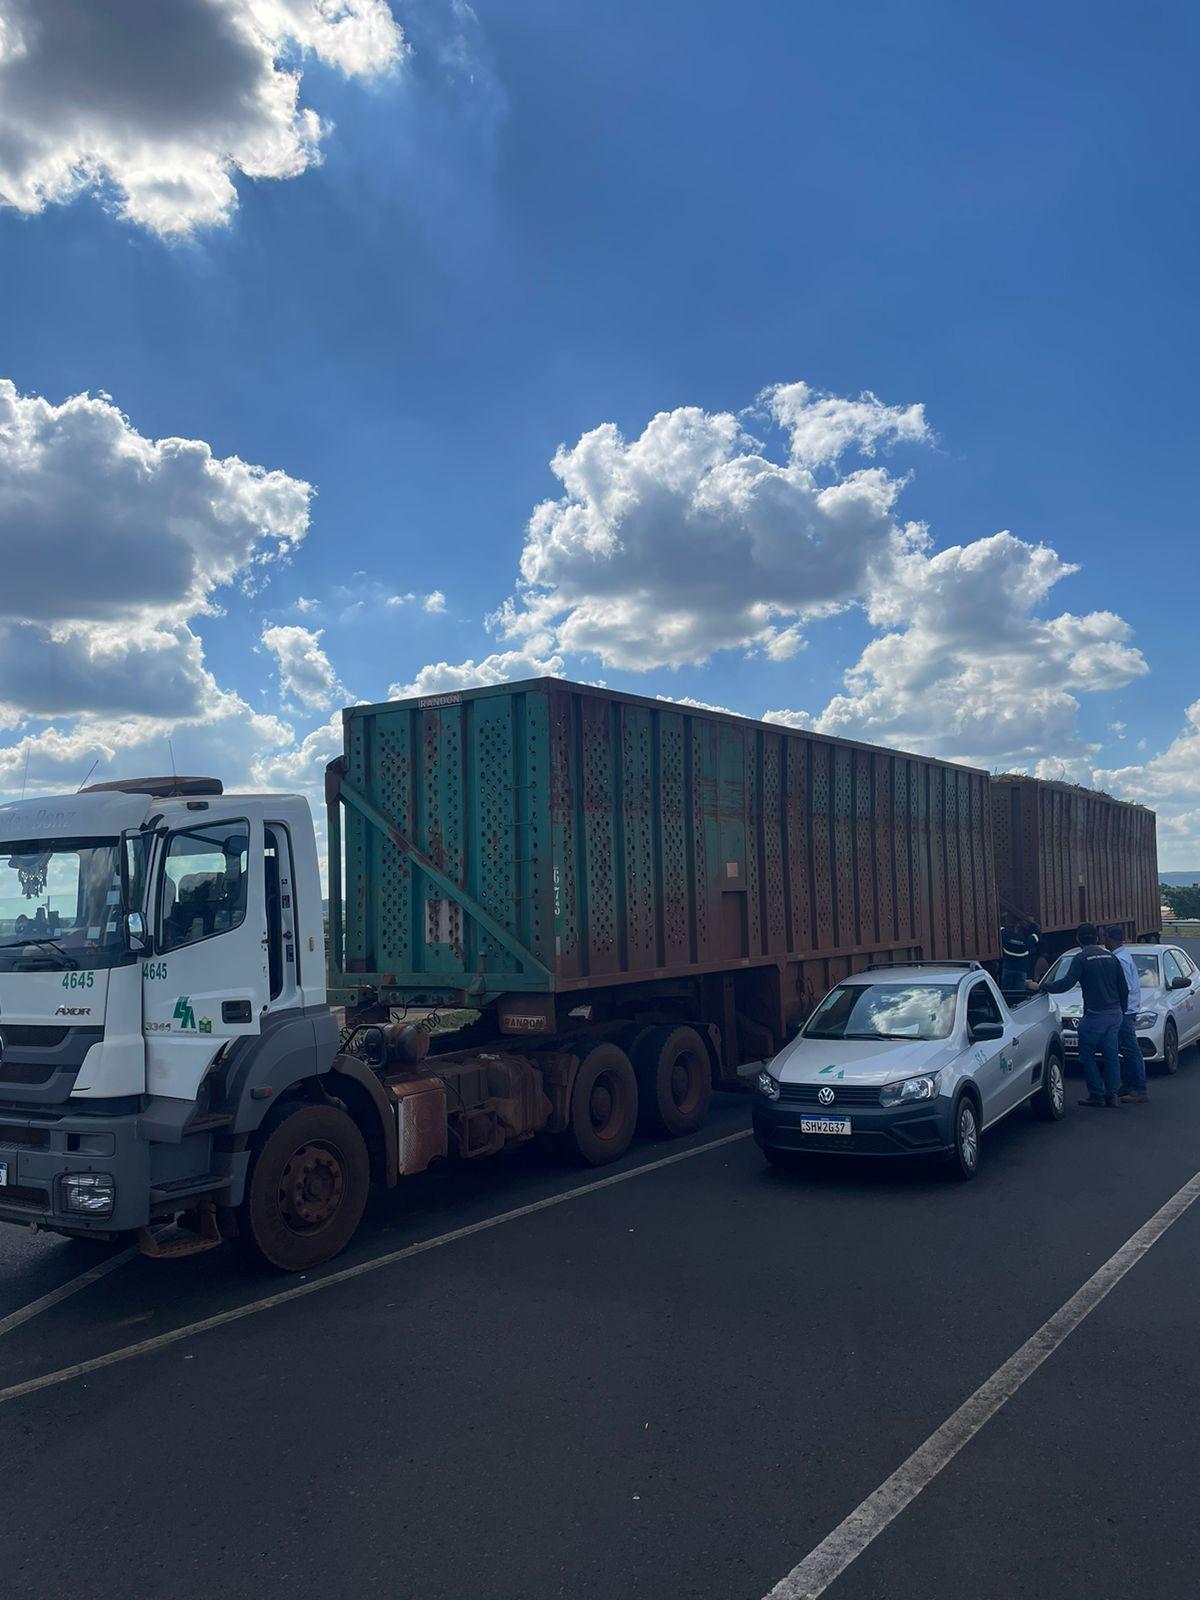 Diante da suspeita de excesso de peso, a combinação de veículos e a carga foram encaminhados para pesagem, que constatou 111.750KG (Foto/Divulgação)